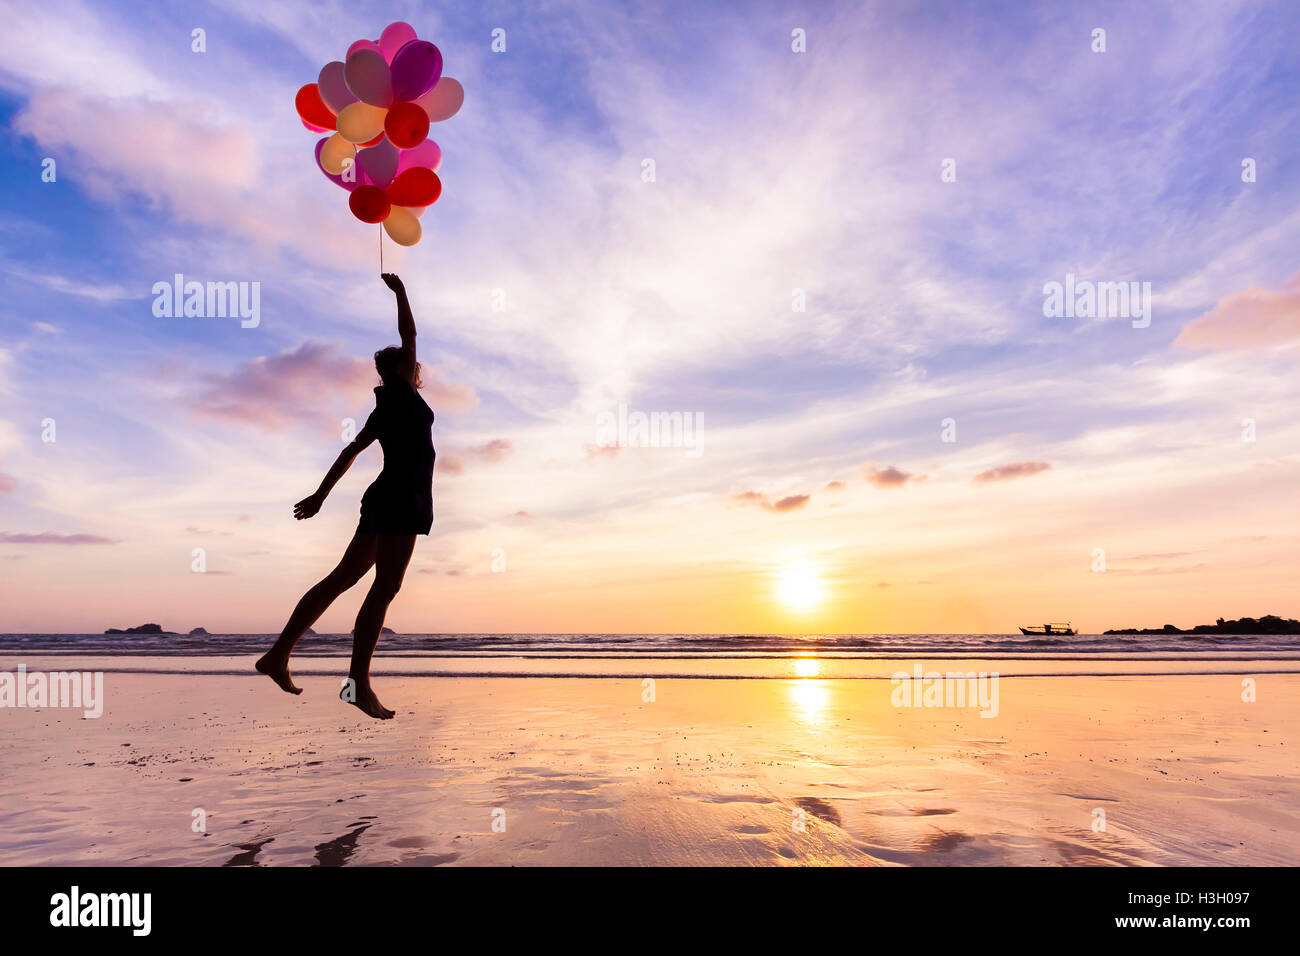 Mujer en un sueño feliz volando en el cielo levantada por globos de helio Foto de stock